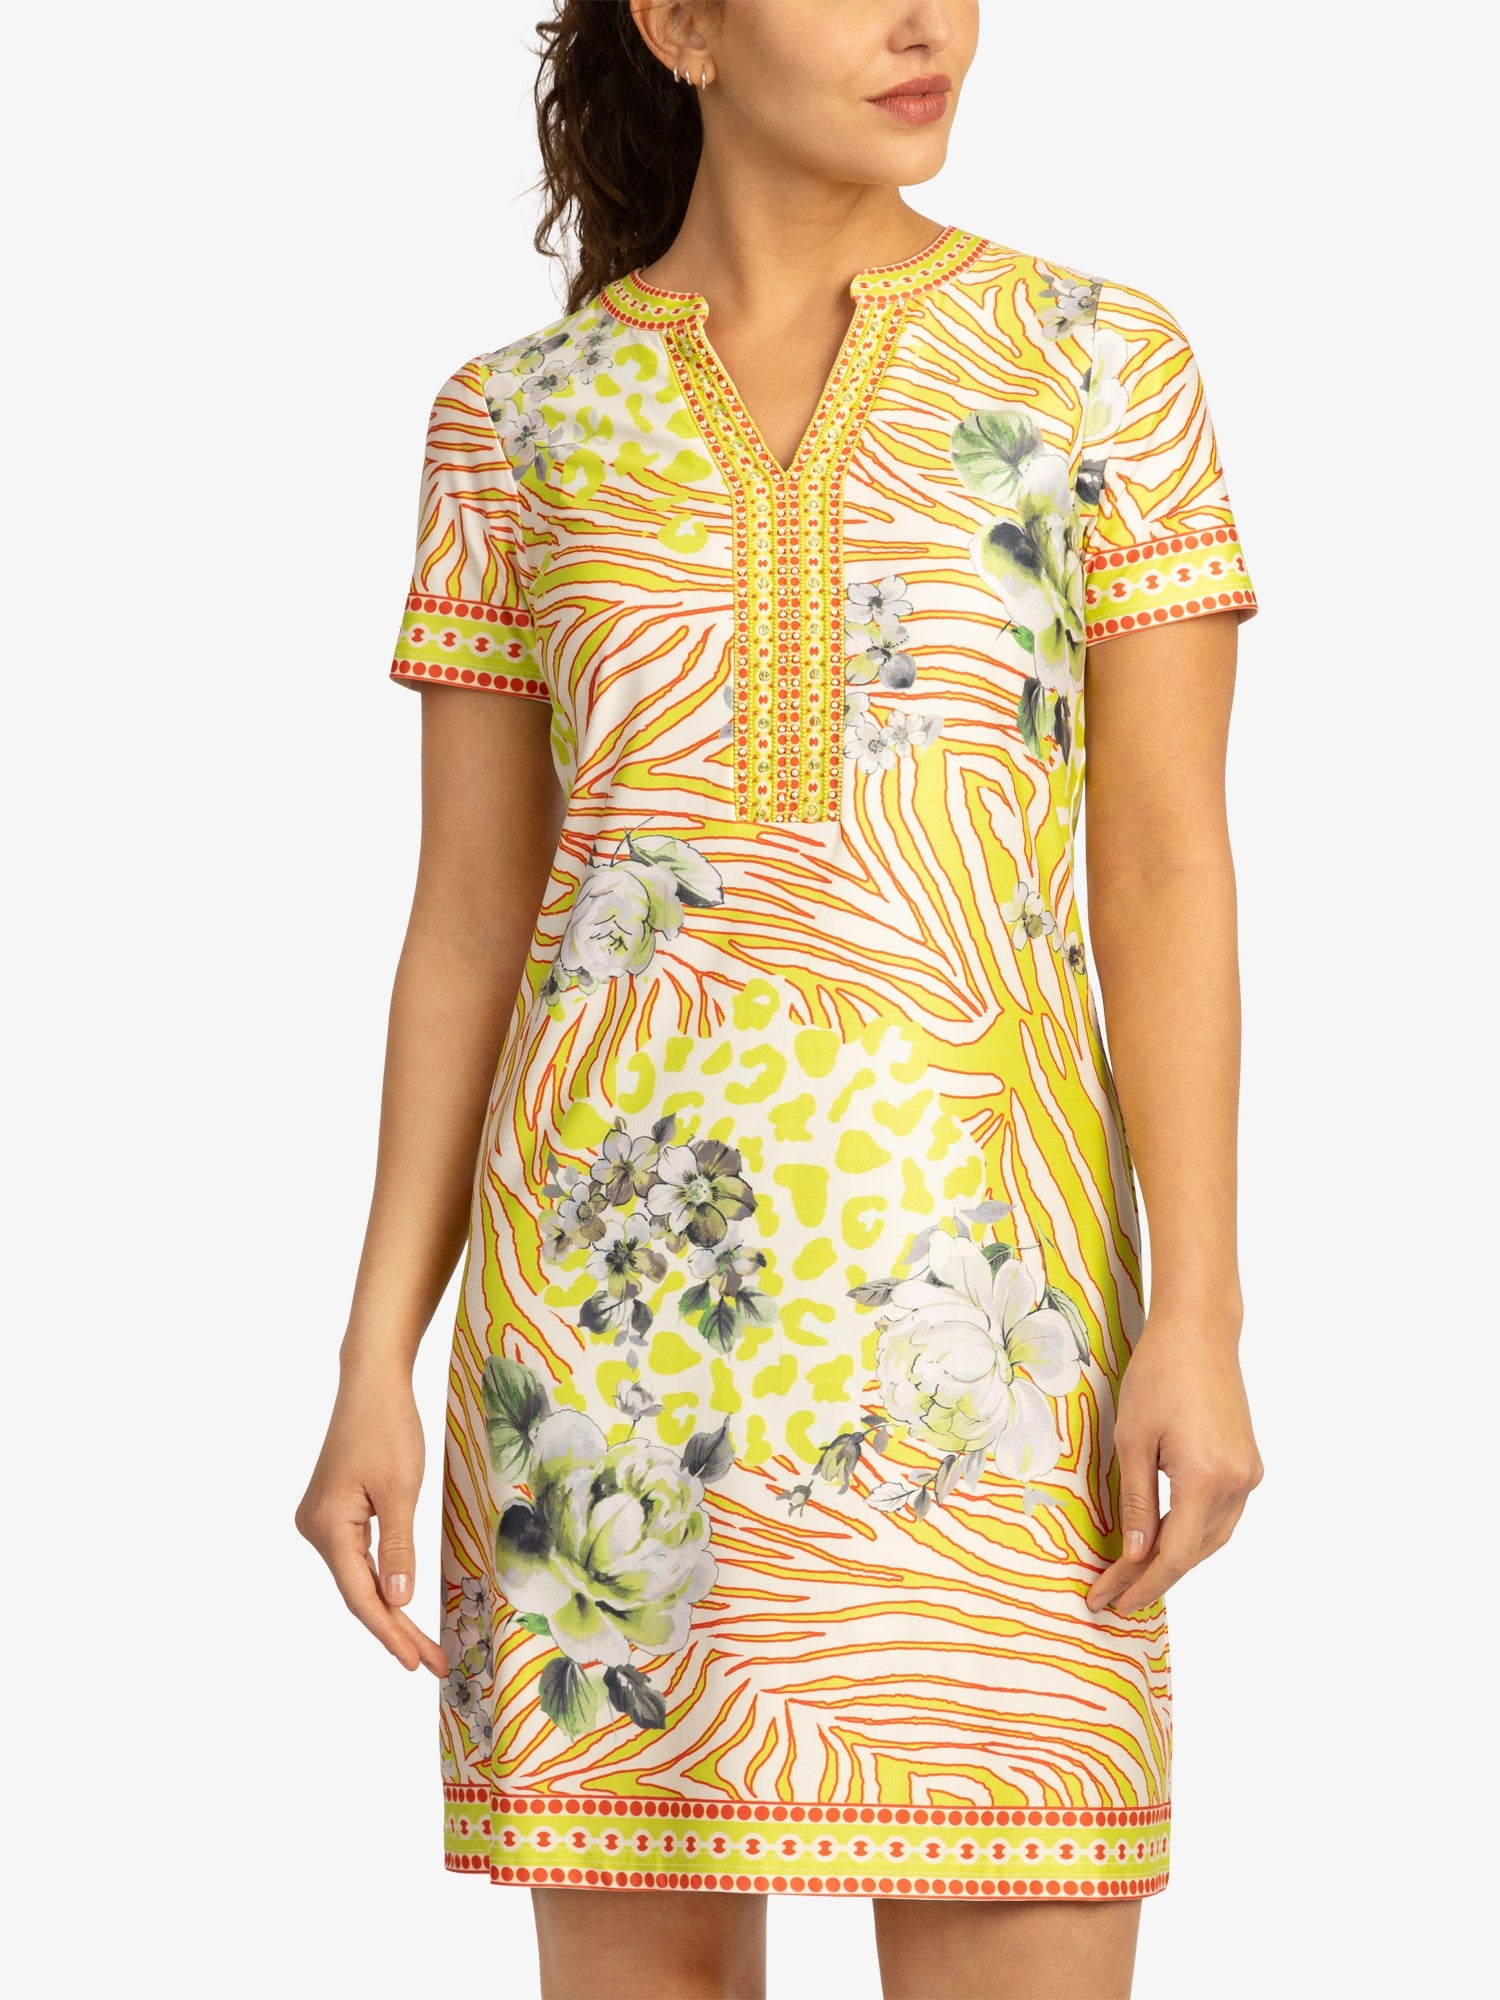 Mint & Mia Etuikleid aus hochwertigem Polyester Material mit Modisch Stil | gelb-multicolor